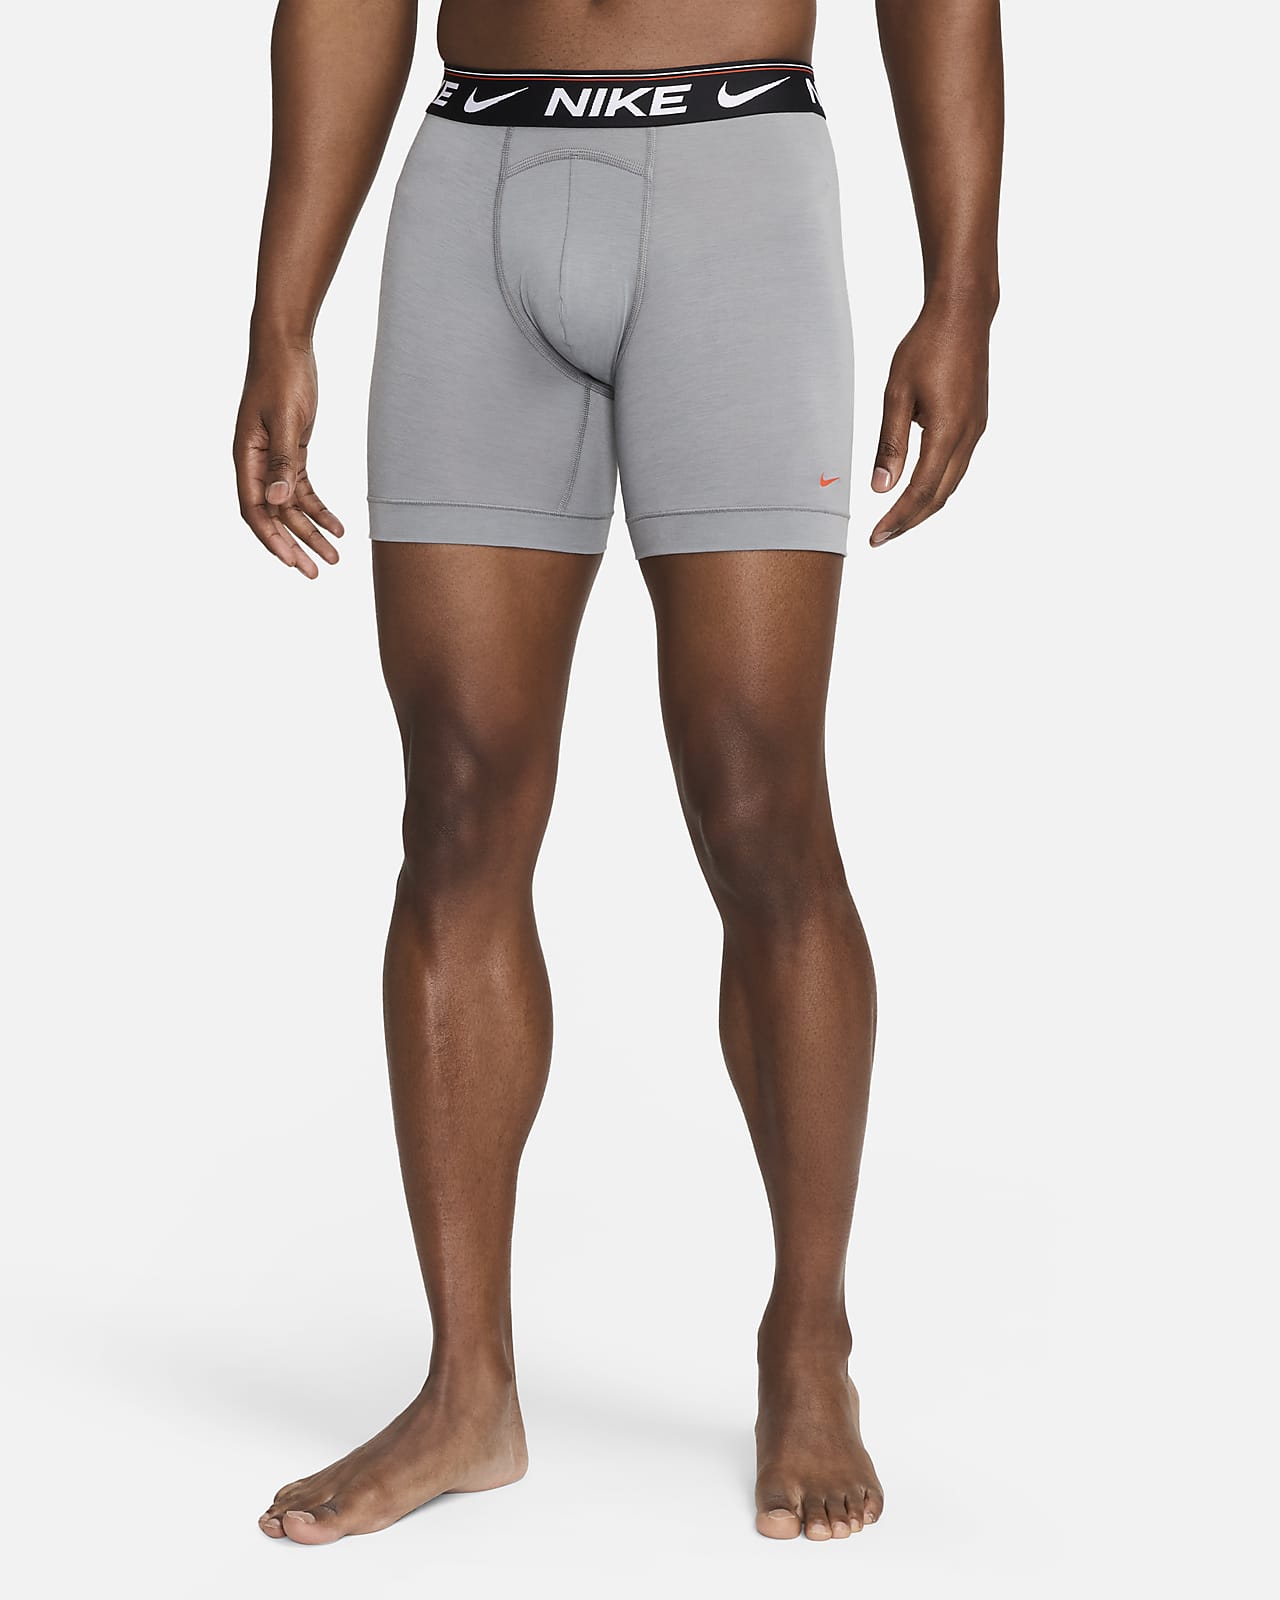 Nike Dri-Fit Move to Zero Boxer Brief Men's XL NEW Gray - Single Pair